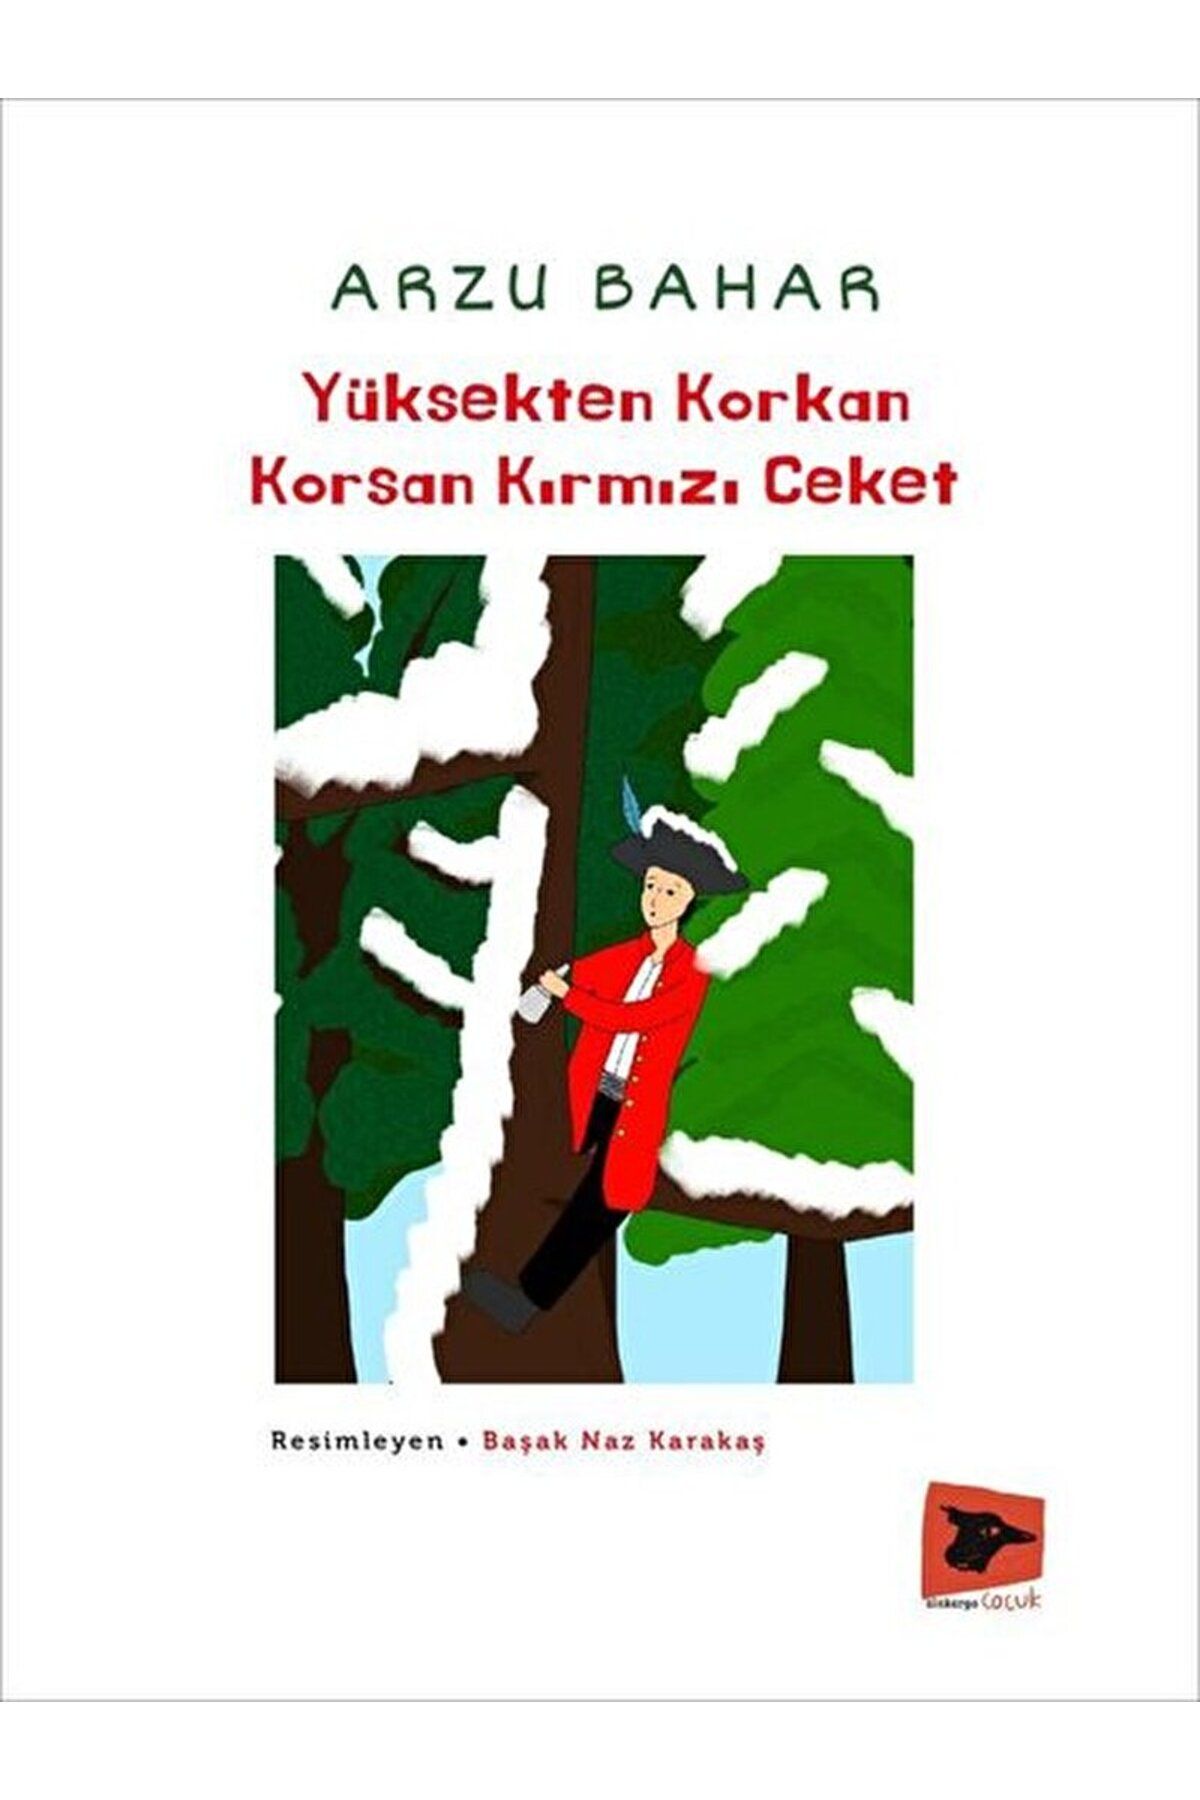 Alakarga Sanat Yayınları Yüksekten Korkan Korsan Kırmızı Ceket / Arzu Bahar / Alakarga Sanat Yayınları / 9786057746795